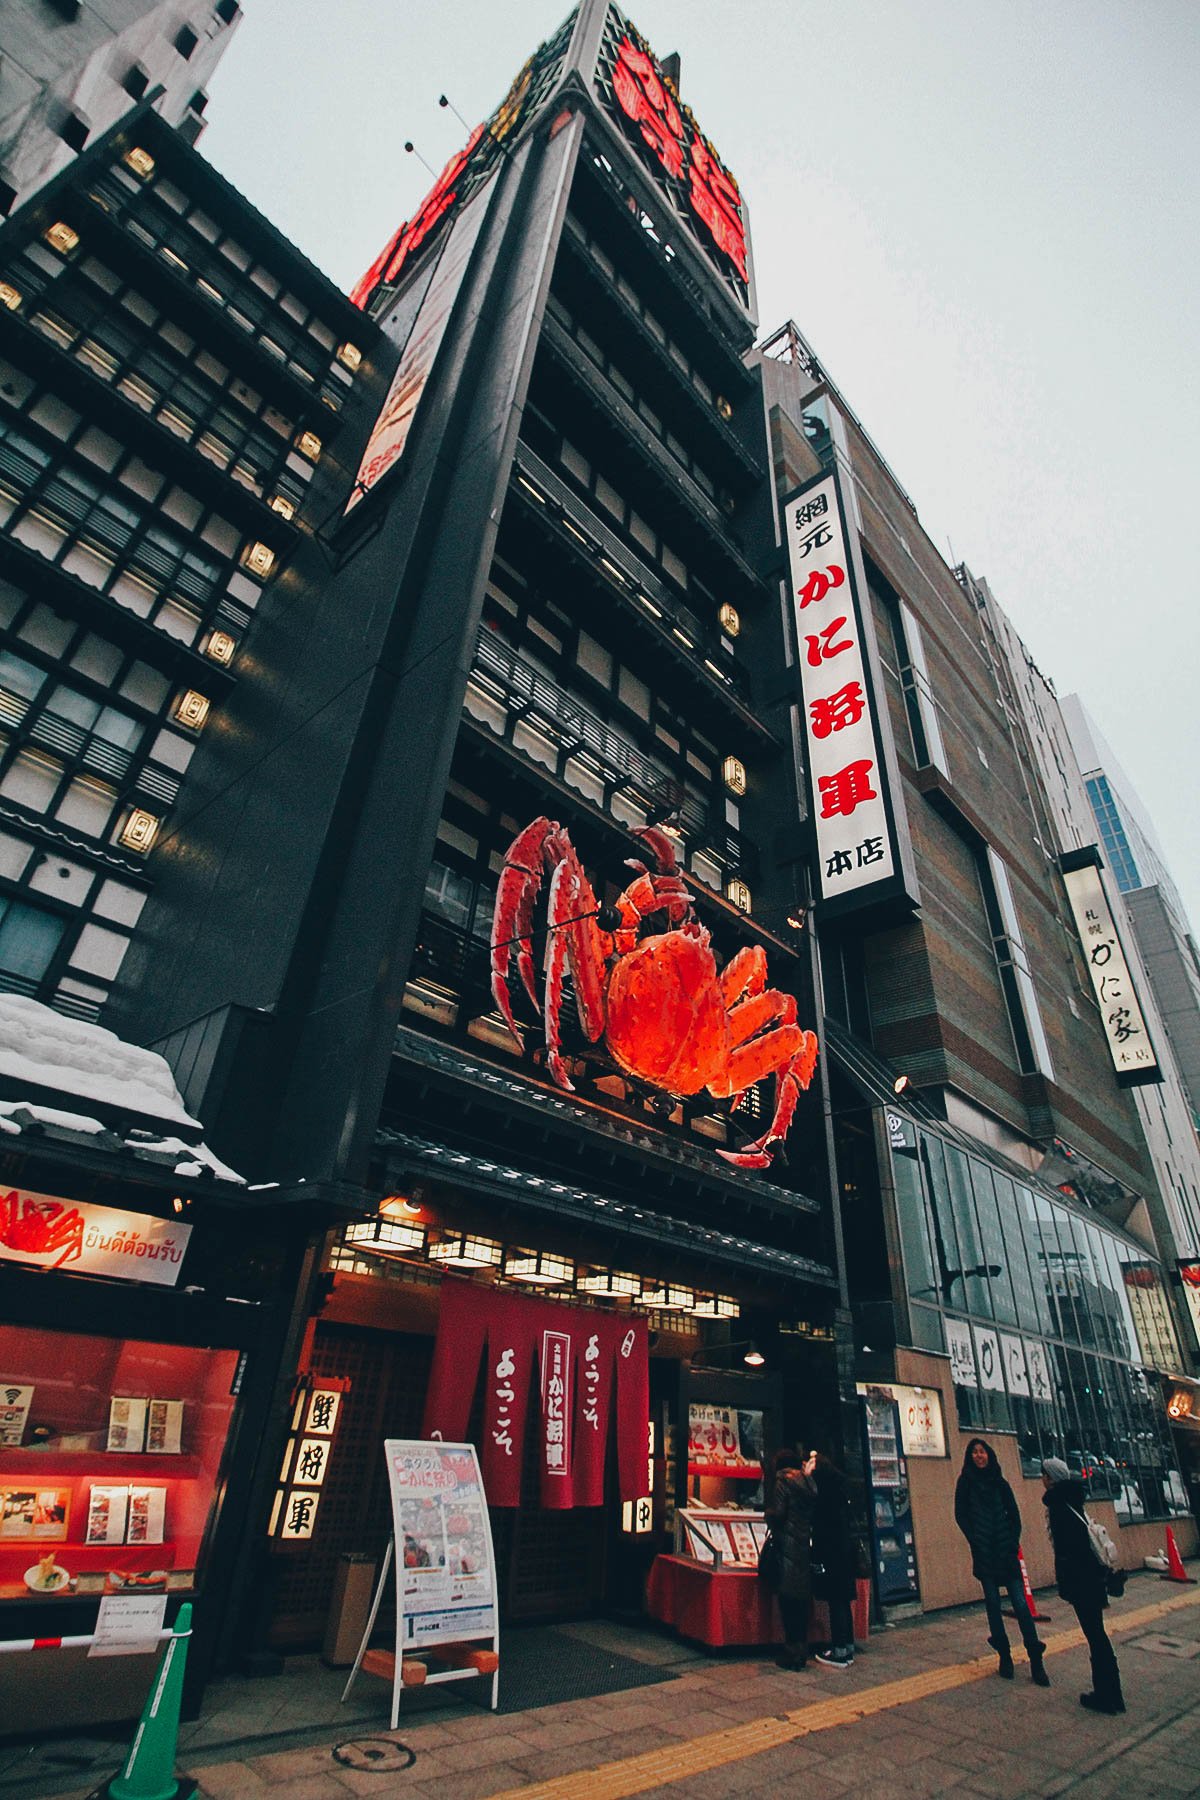 Hokkaido Kani Syougun: Where to Have Sapporo's Famous Crab